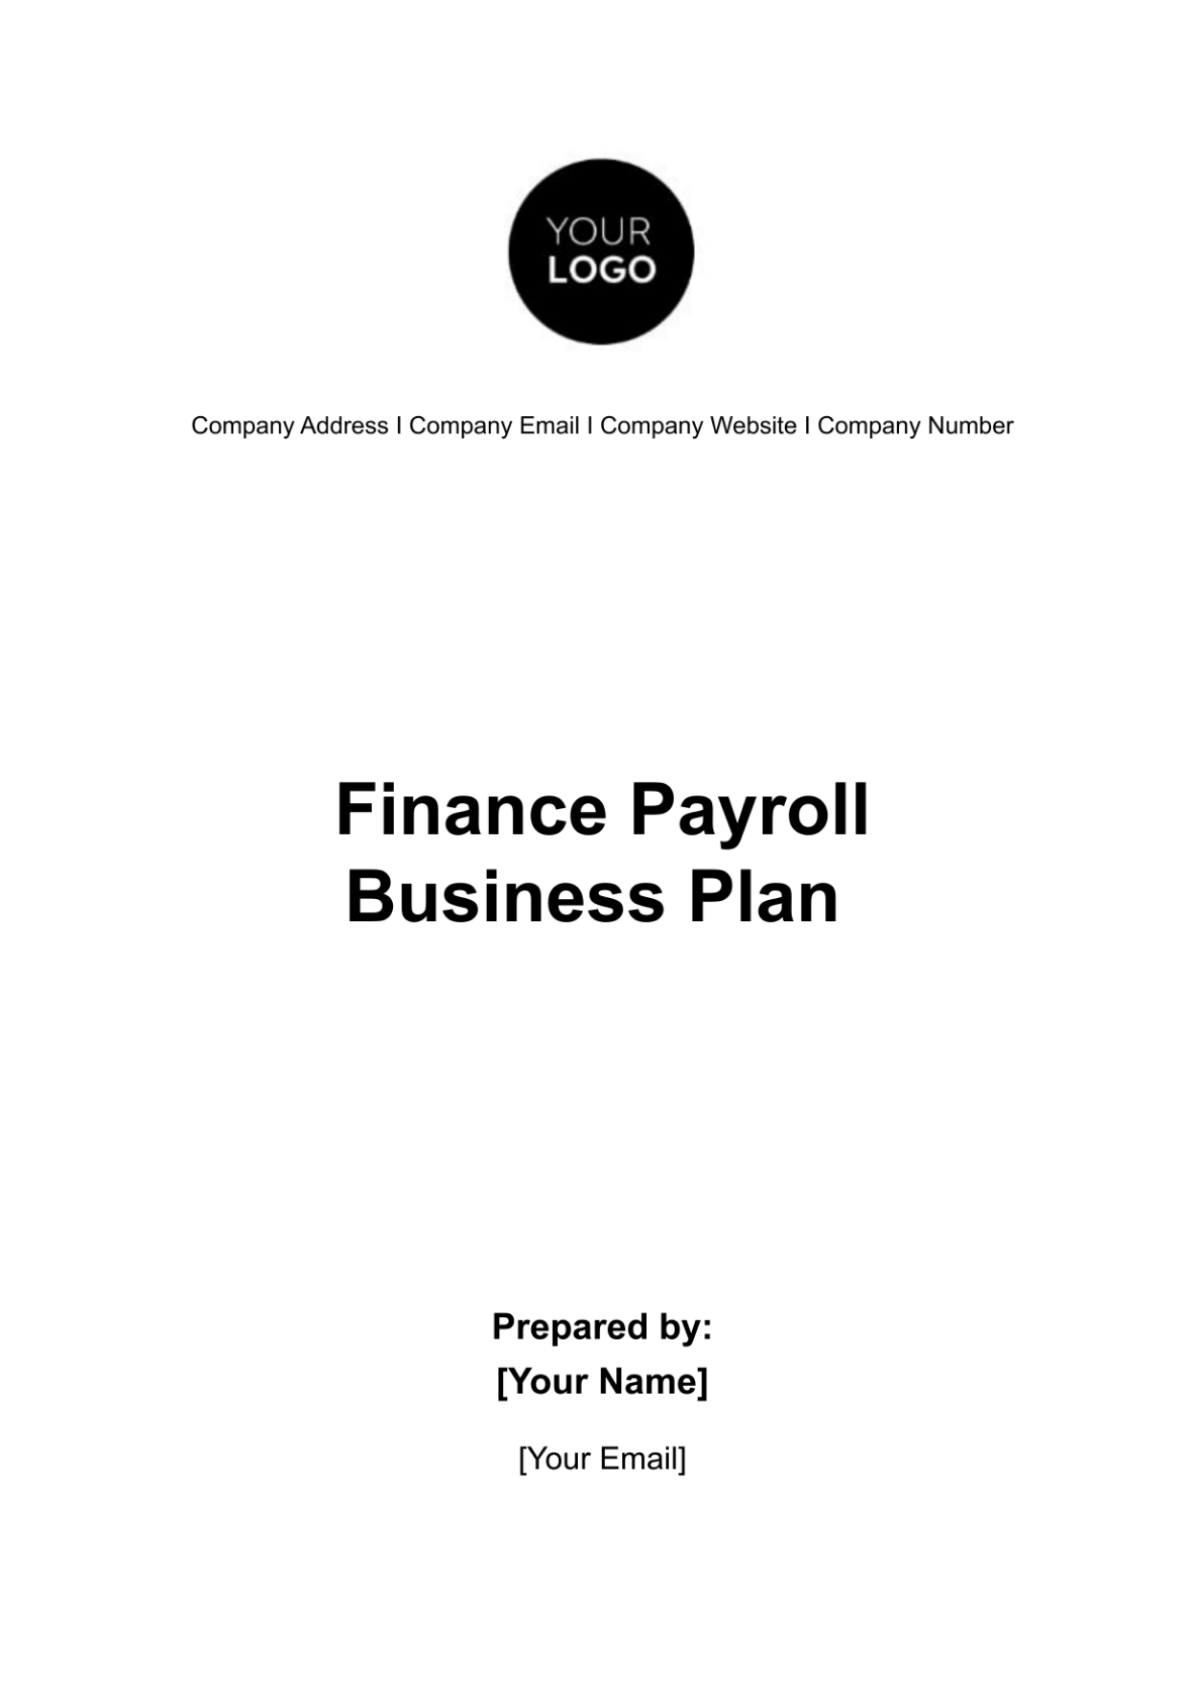 Finance Payroll Business Plan Template